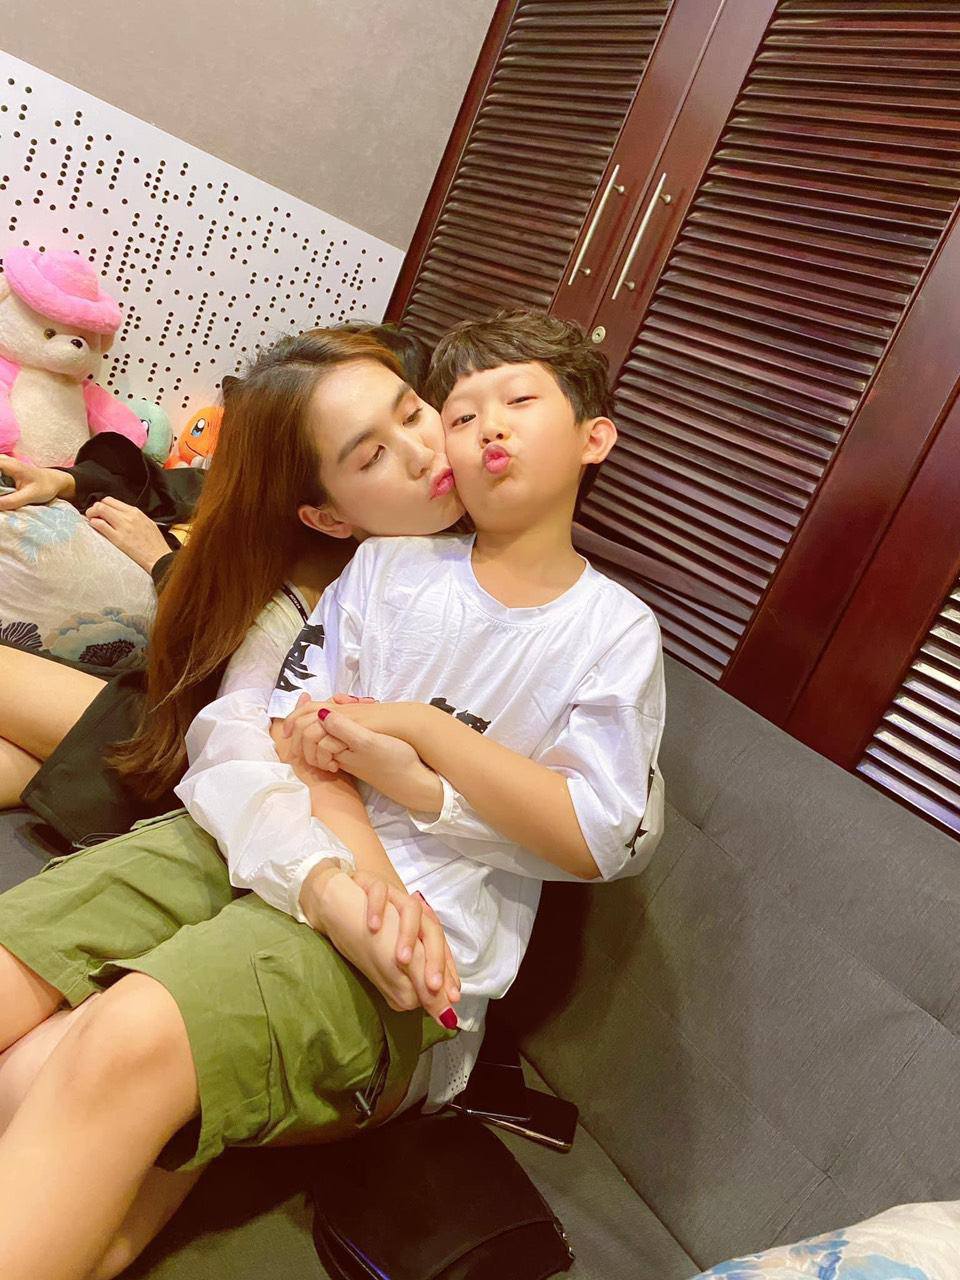 Ngọc Trinh là một trong những người mẫu nổi tiếng và được yêu thích tại Việt Nam. Hình ảnh cô nàng hôn chạm môi đang được lan truyền trên mạng xã hội, khiến cộng đồng fan vô cùng thích thú và đón xem.